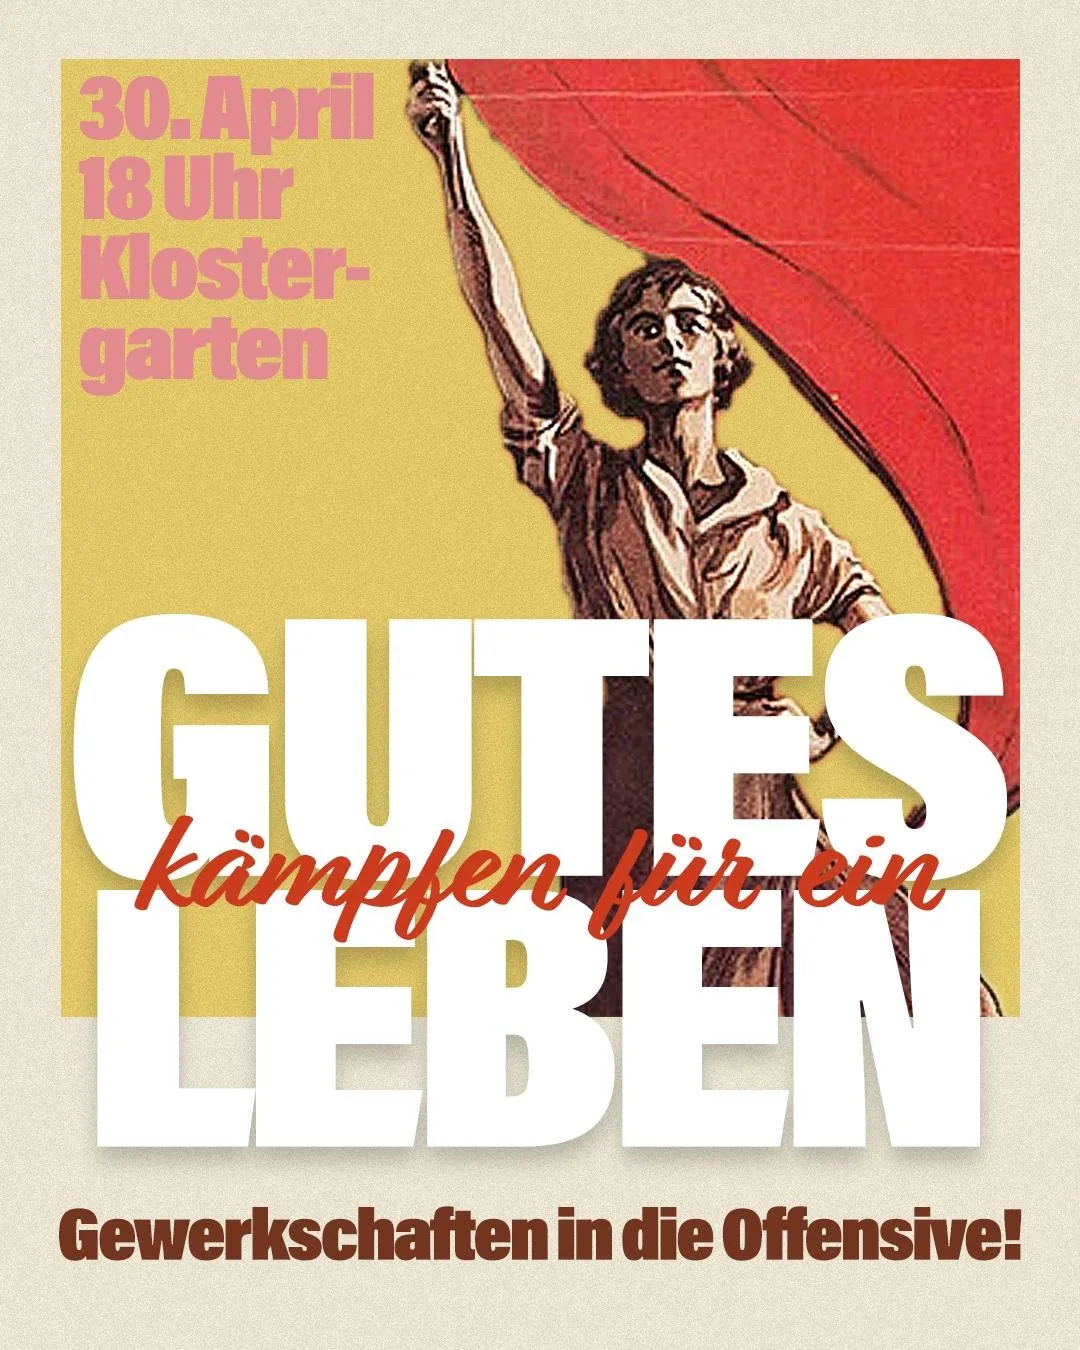 Sharepic "Kämpfen für ein Gutes Leben - Gewerkschaften in die Offensive!" im Stil der 1920er Jahre. Dazu die Angaben 30. April, 18 Uhr, Klostergarten